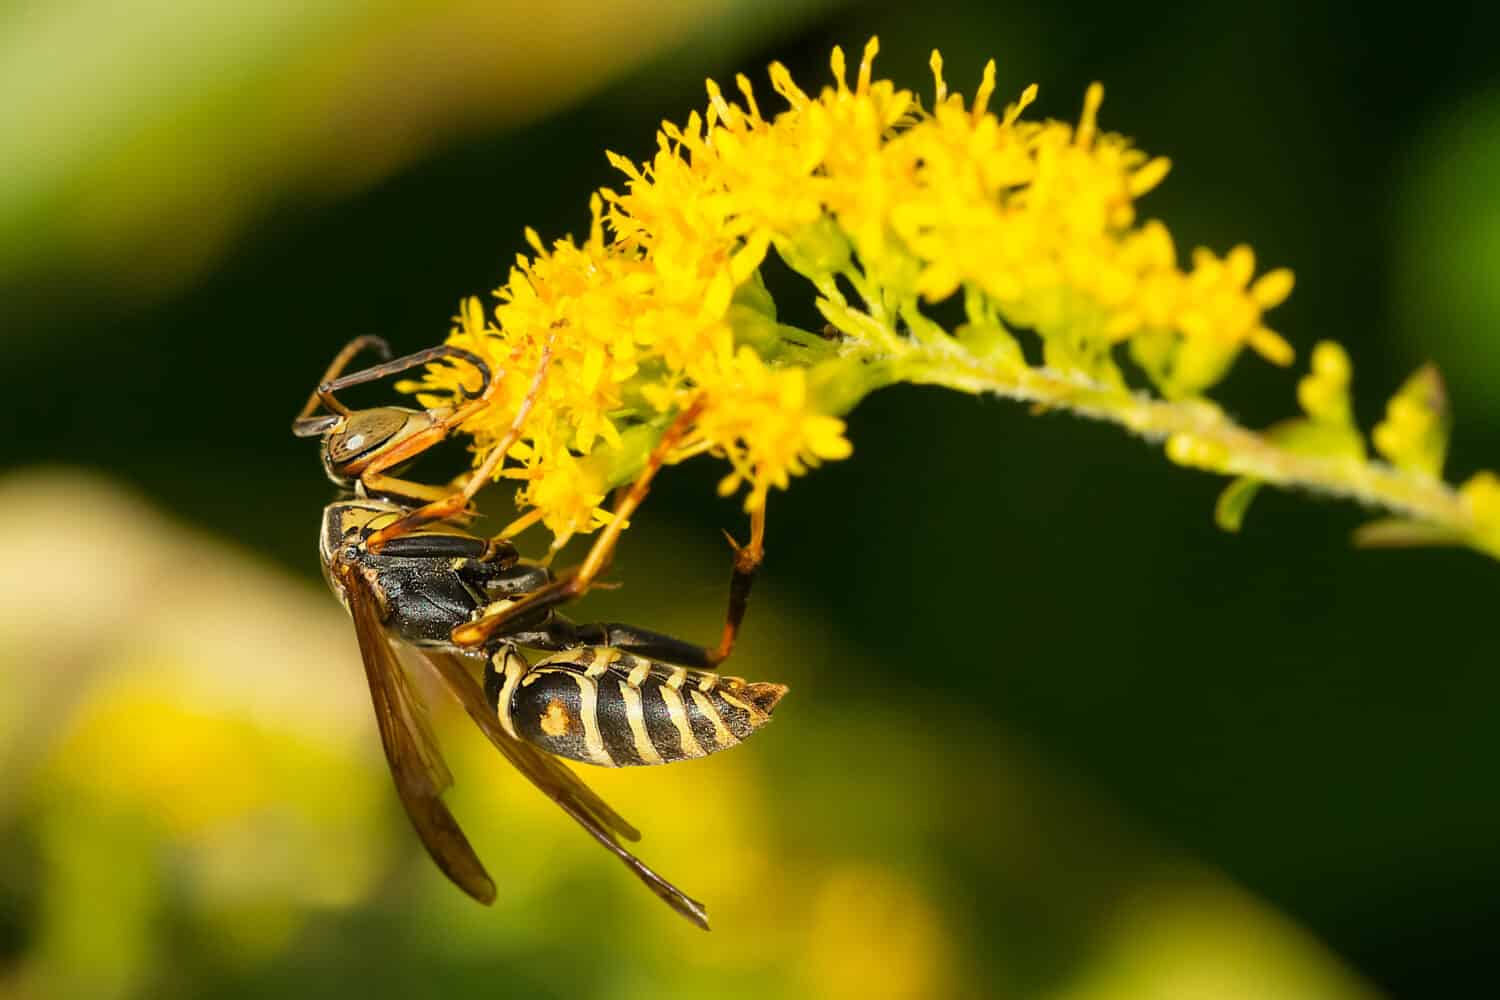 Una vespa di carta settentrionale sta raccogliendo il nettare da un fiore giallo di verga d'oro.  Conosciuto anche come una vespa di carta scura.  Giardini Edwards, Toronto, Ontario, Canada.